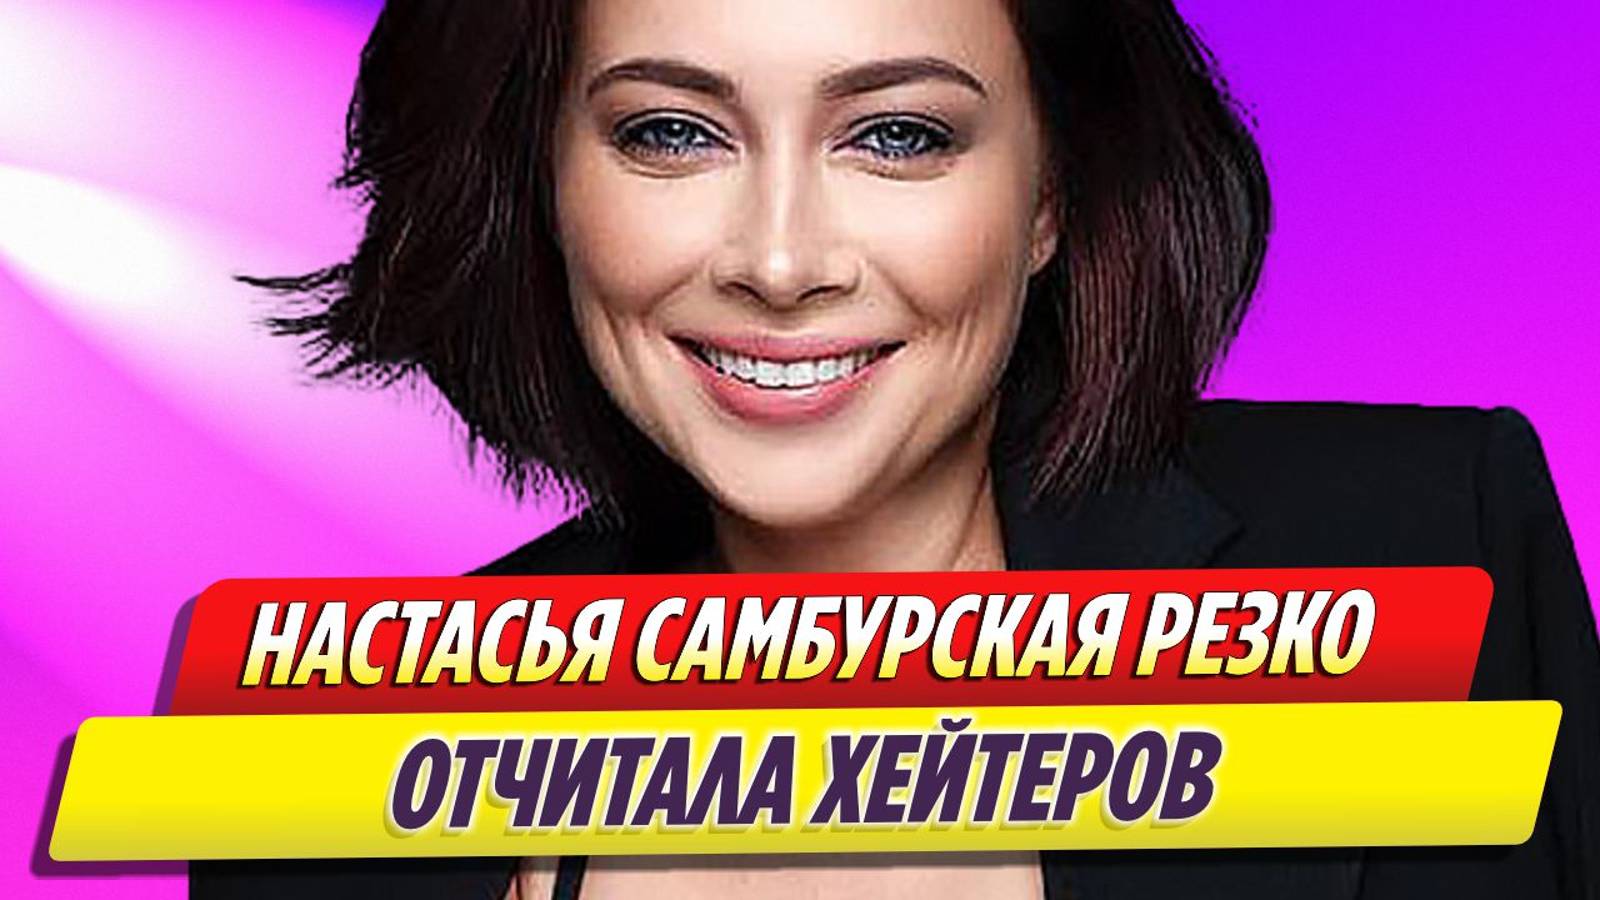 Актриса Настасья Самбурская резко отчитала хейтеров